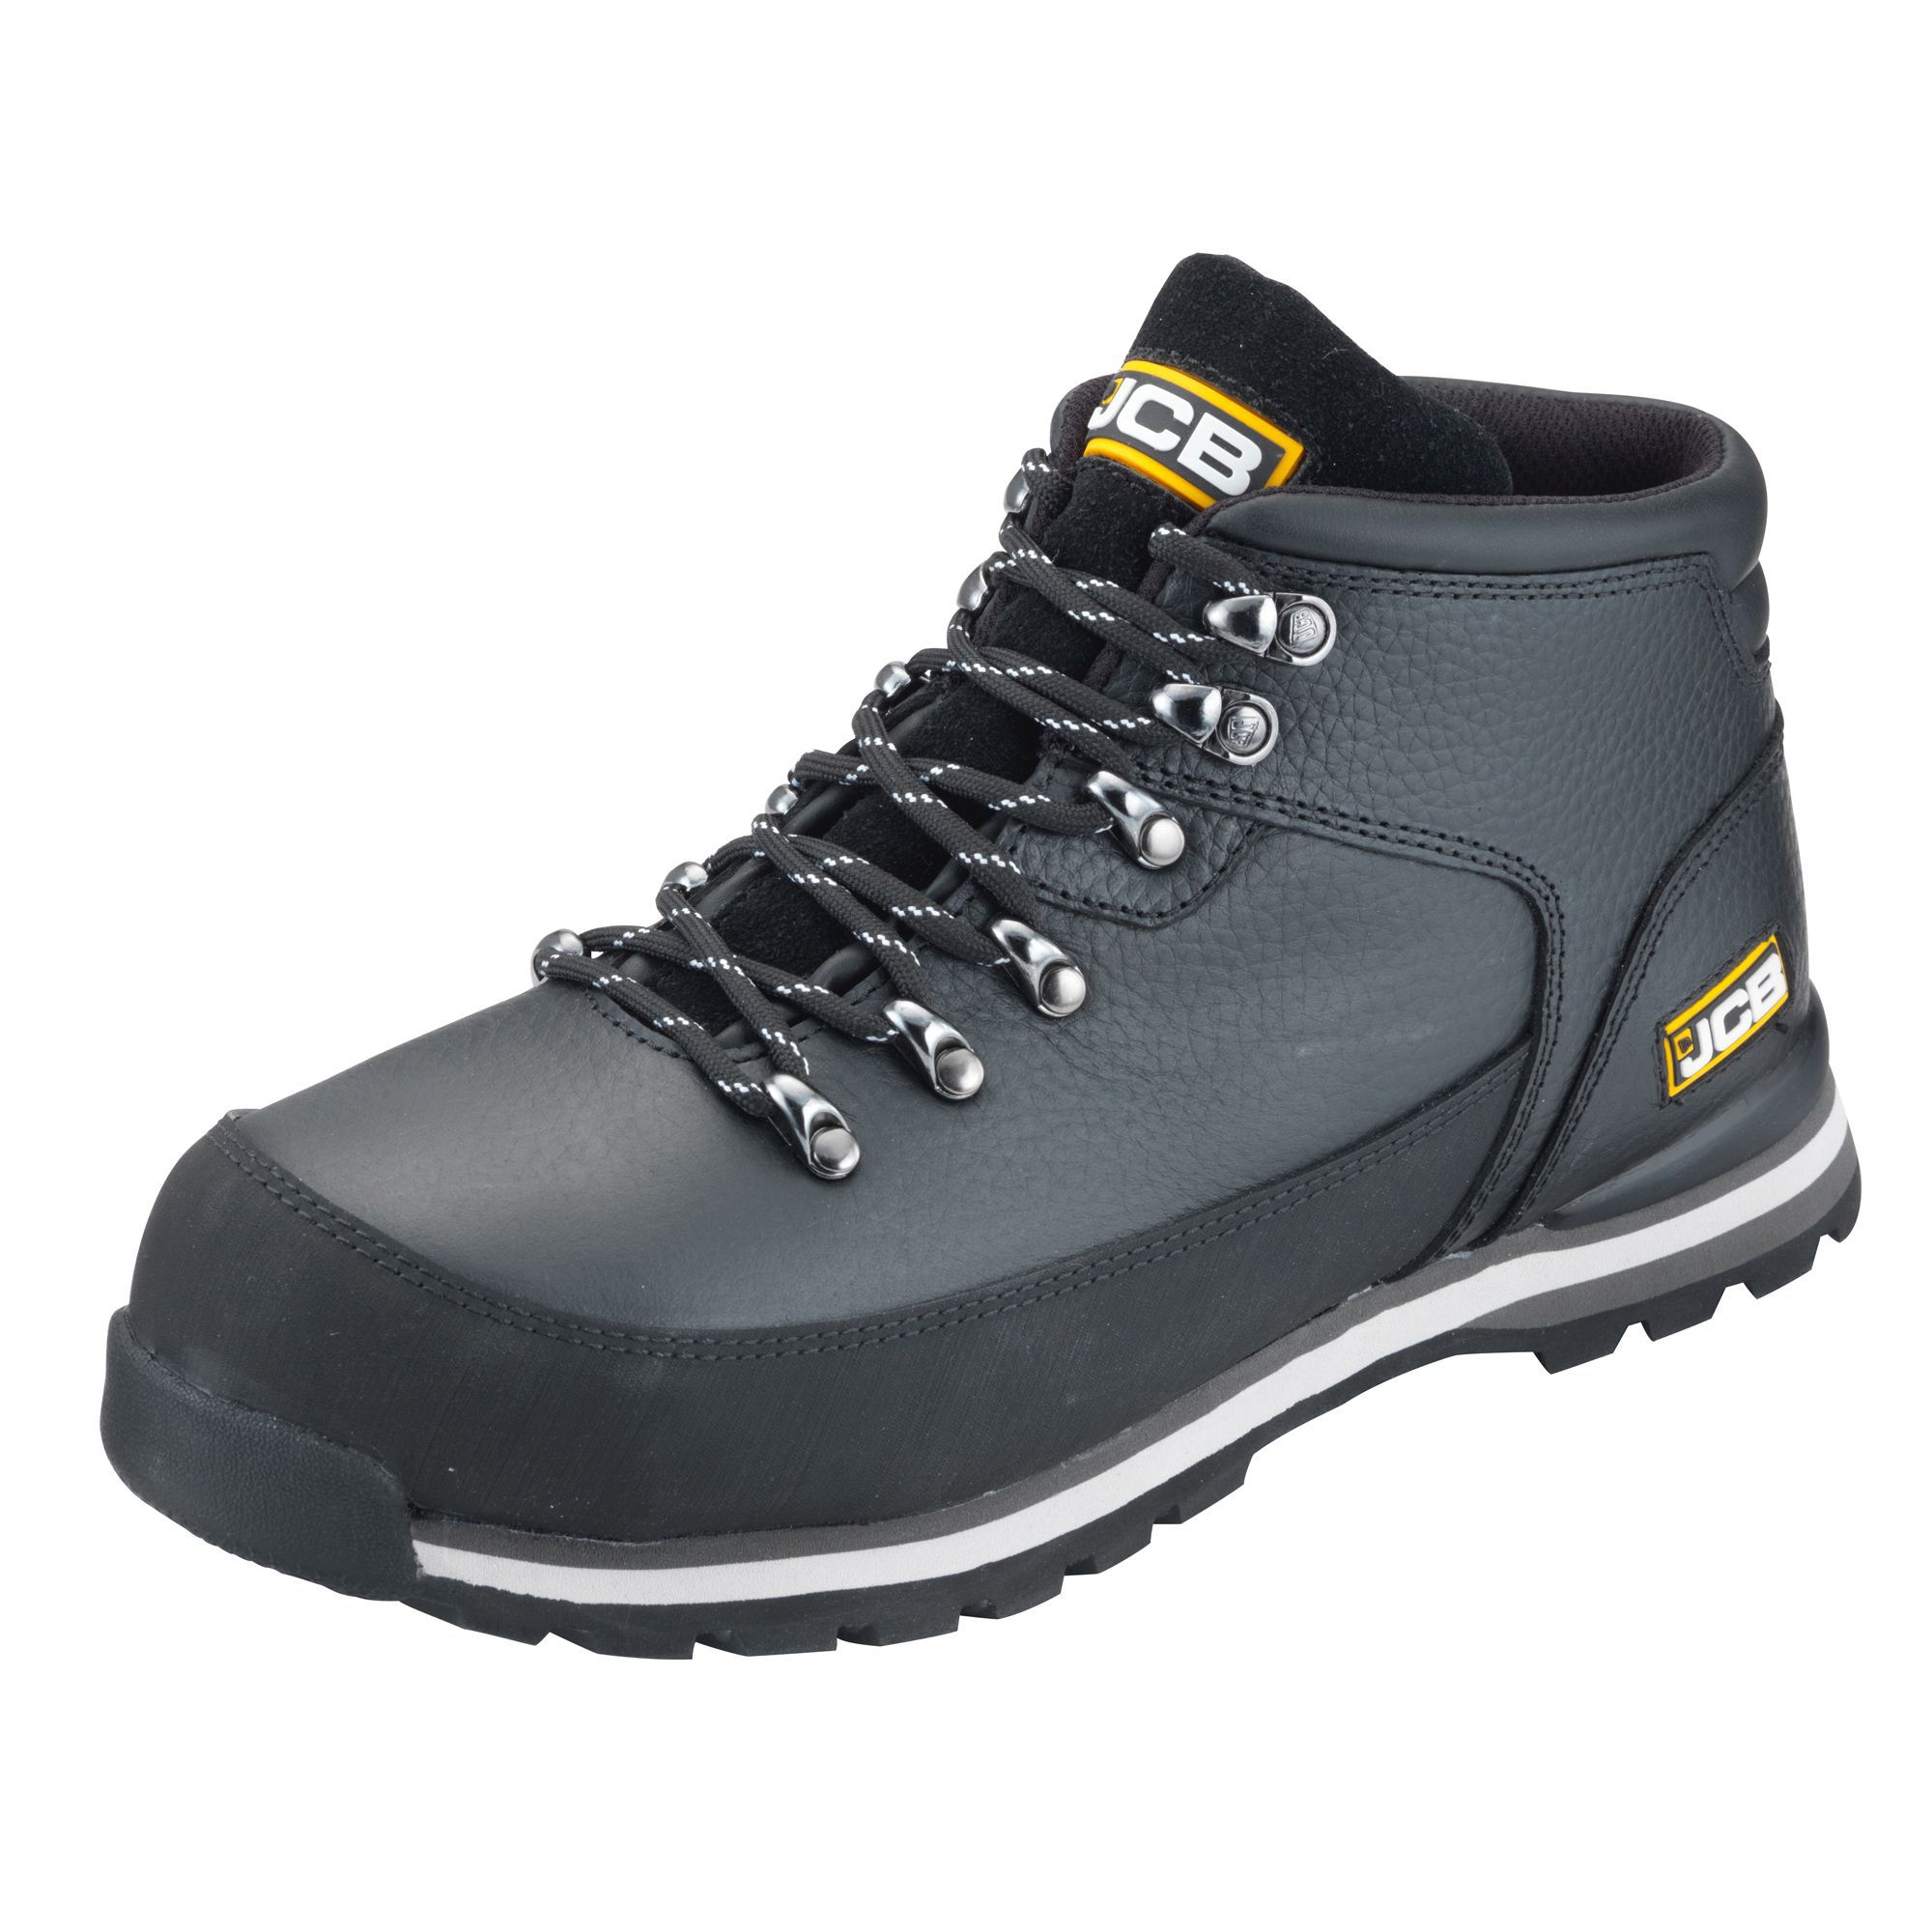 JCB Hiker Black Safety boots, Size 6